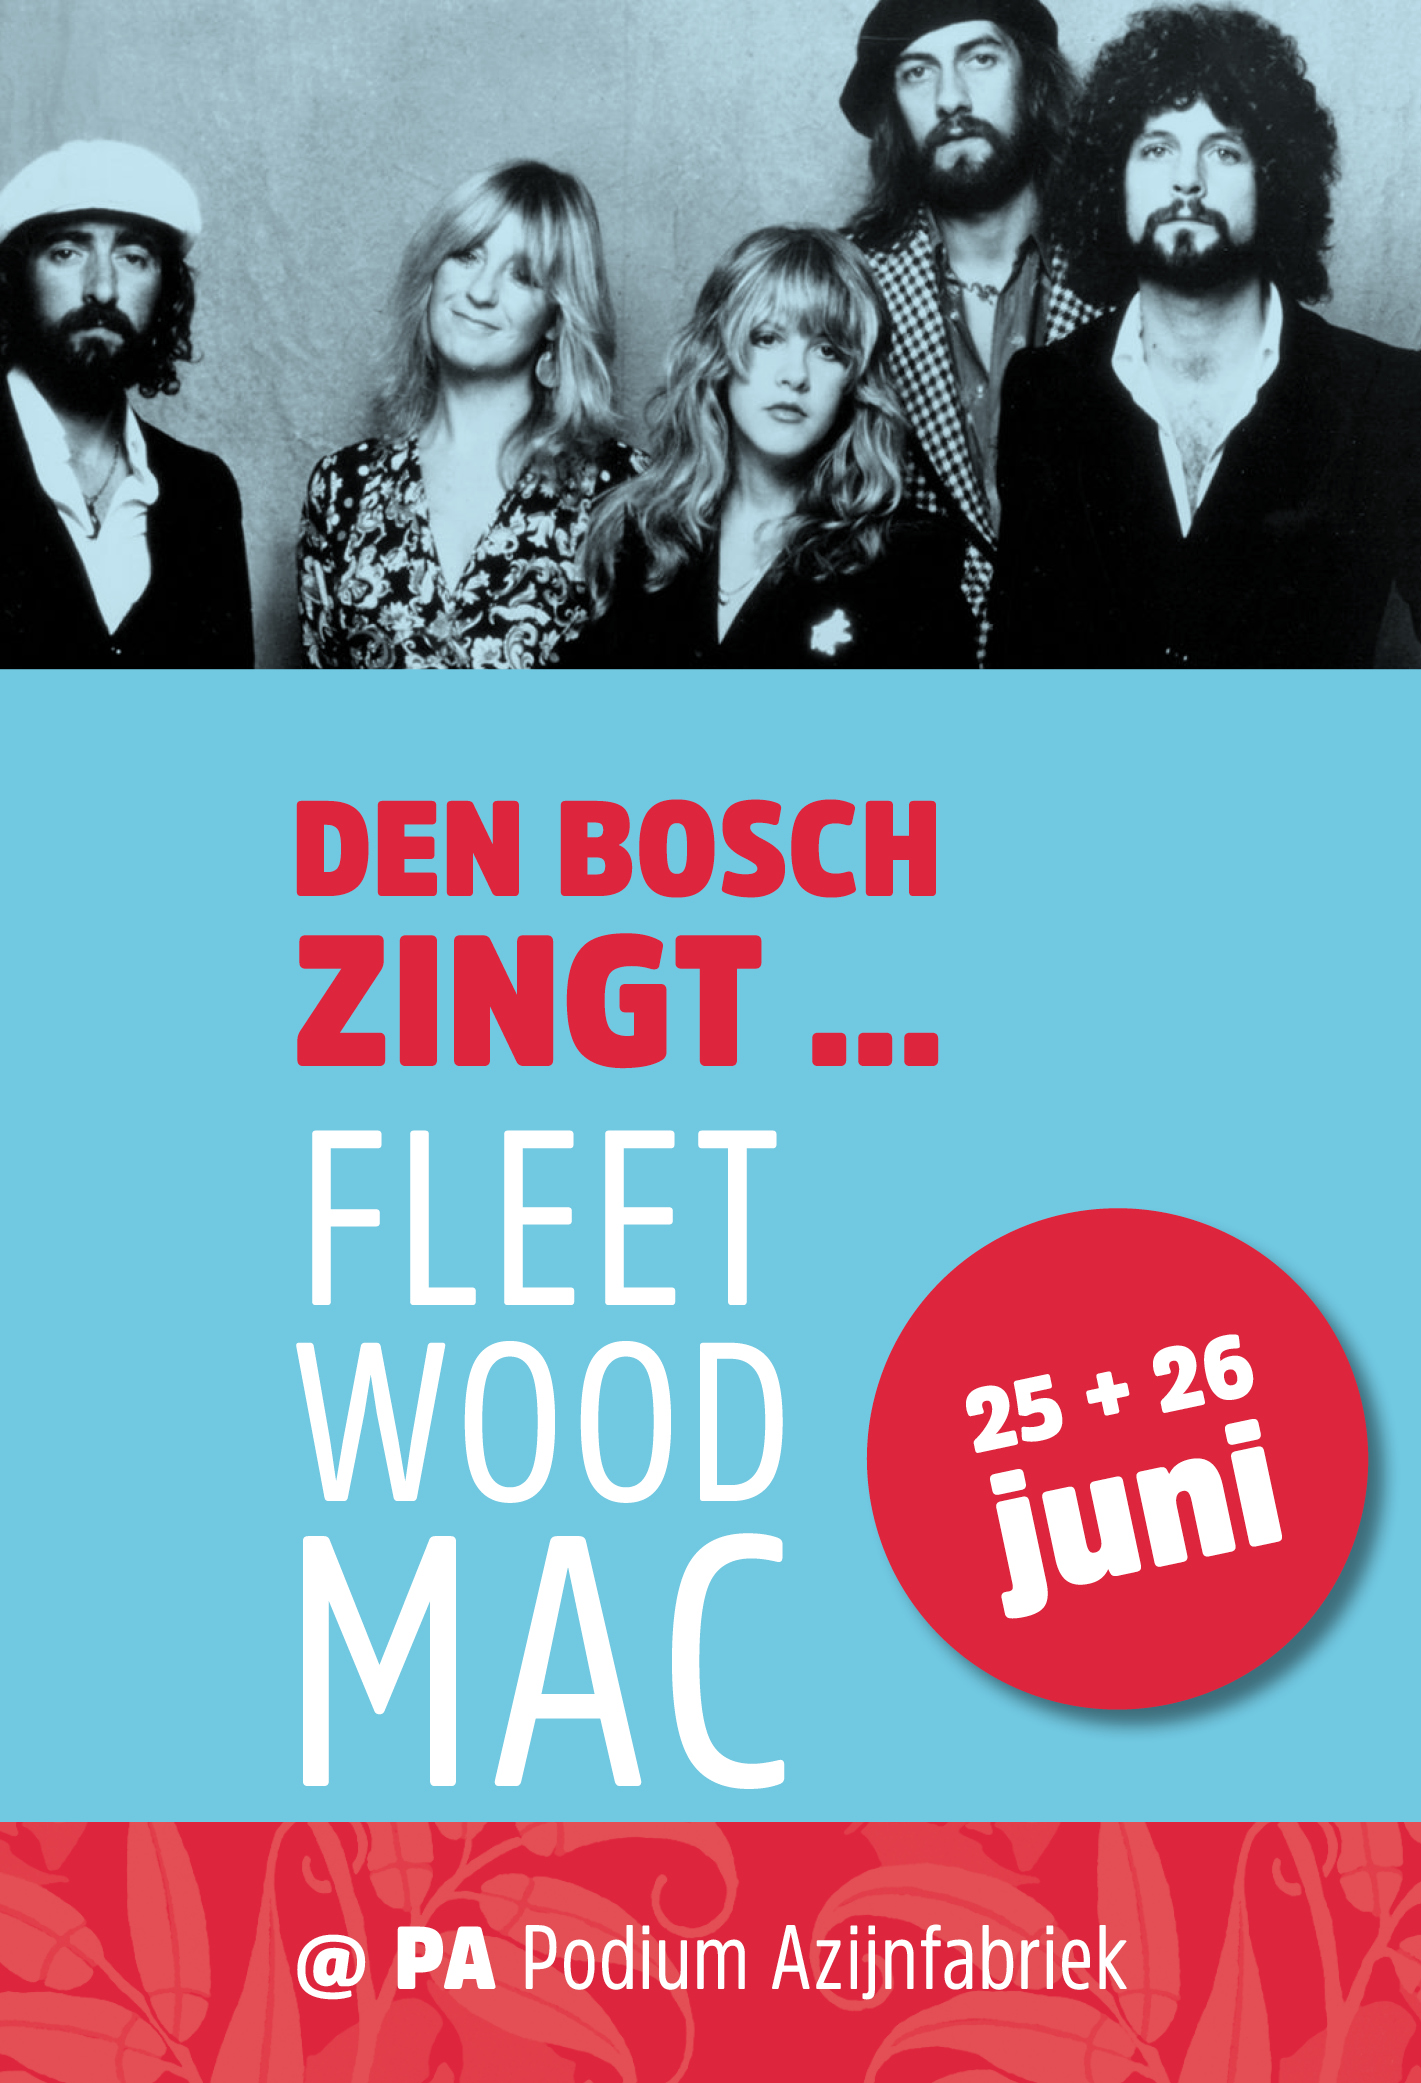 Ticket kopen voor evenement Den Bosch Zingt ...Fleetwood Mac